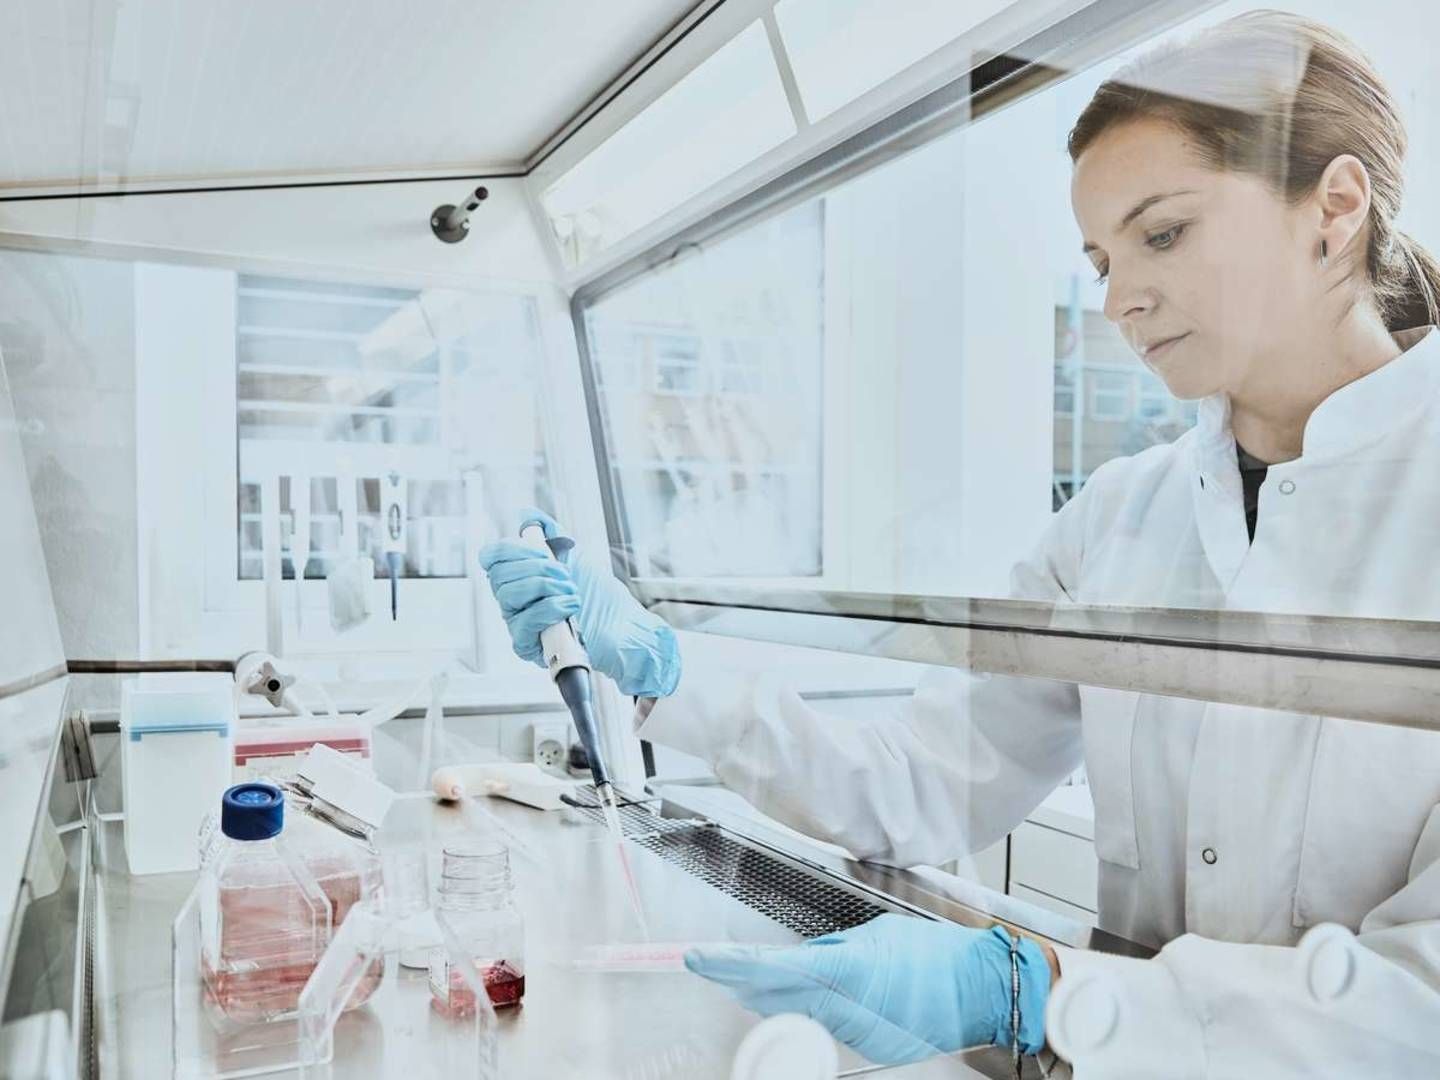 Biotekselskabet Zealand Pharma har fået positive fase 3-data med sin lægemiddelkandidat glepaglutid til behandling af korttarmssyndrom. | Foto: Zealand Pharma / PR